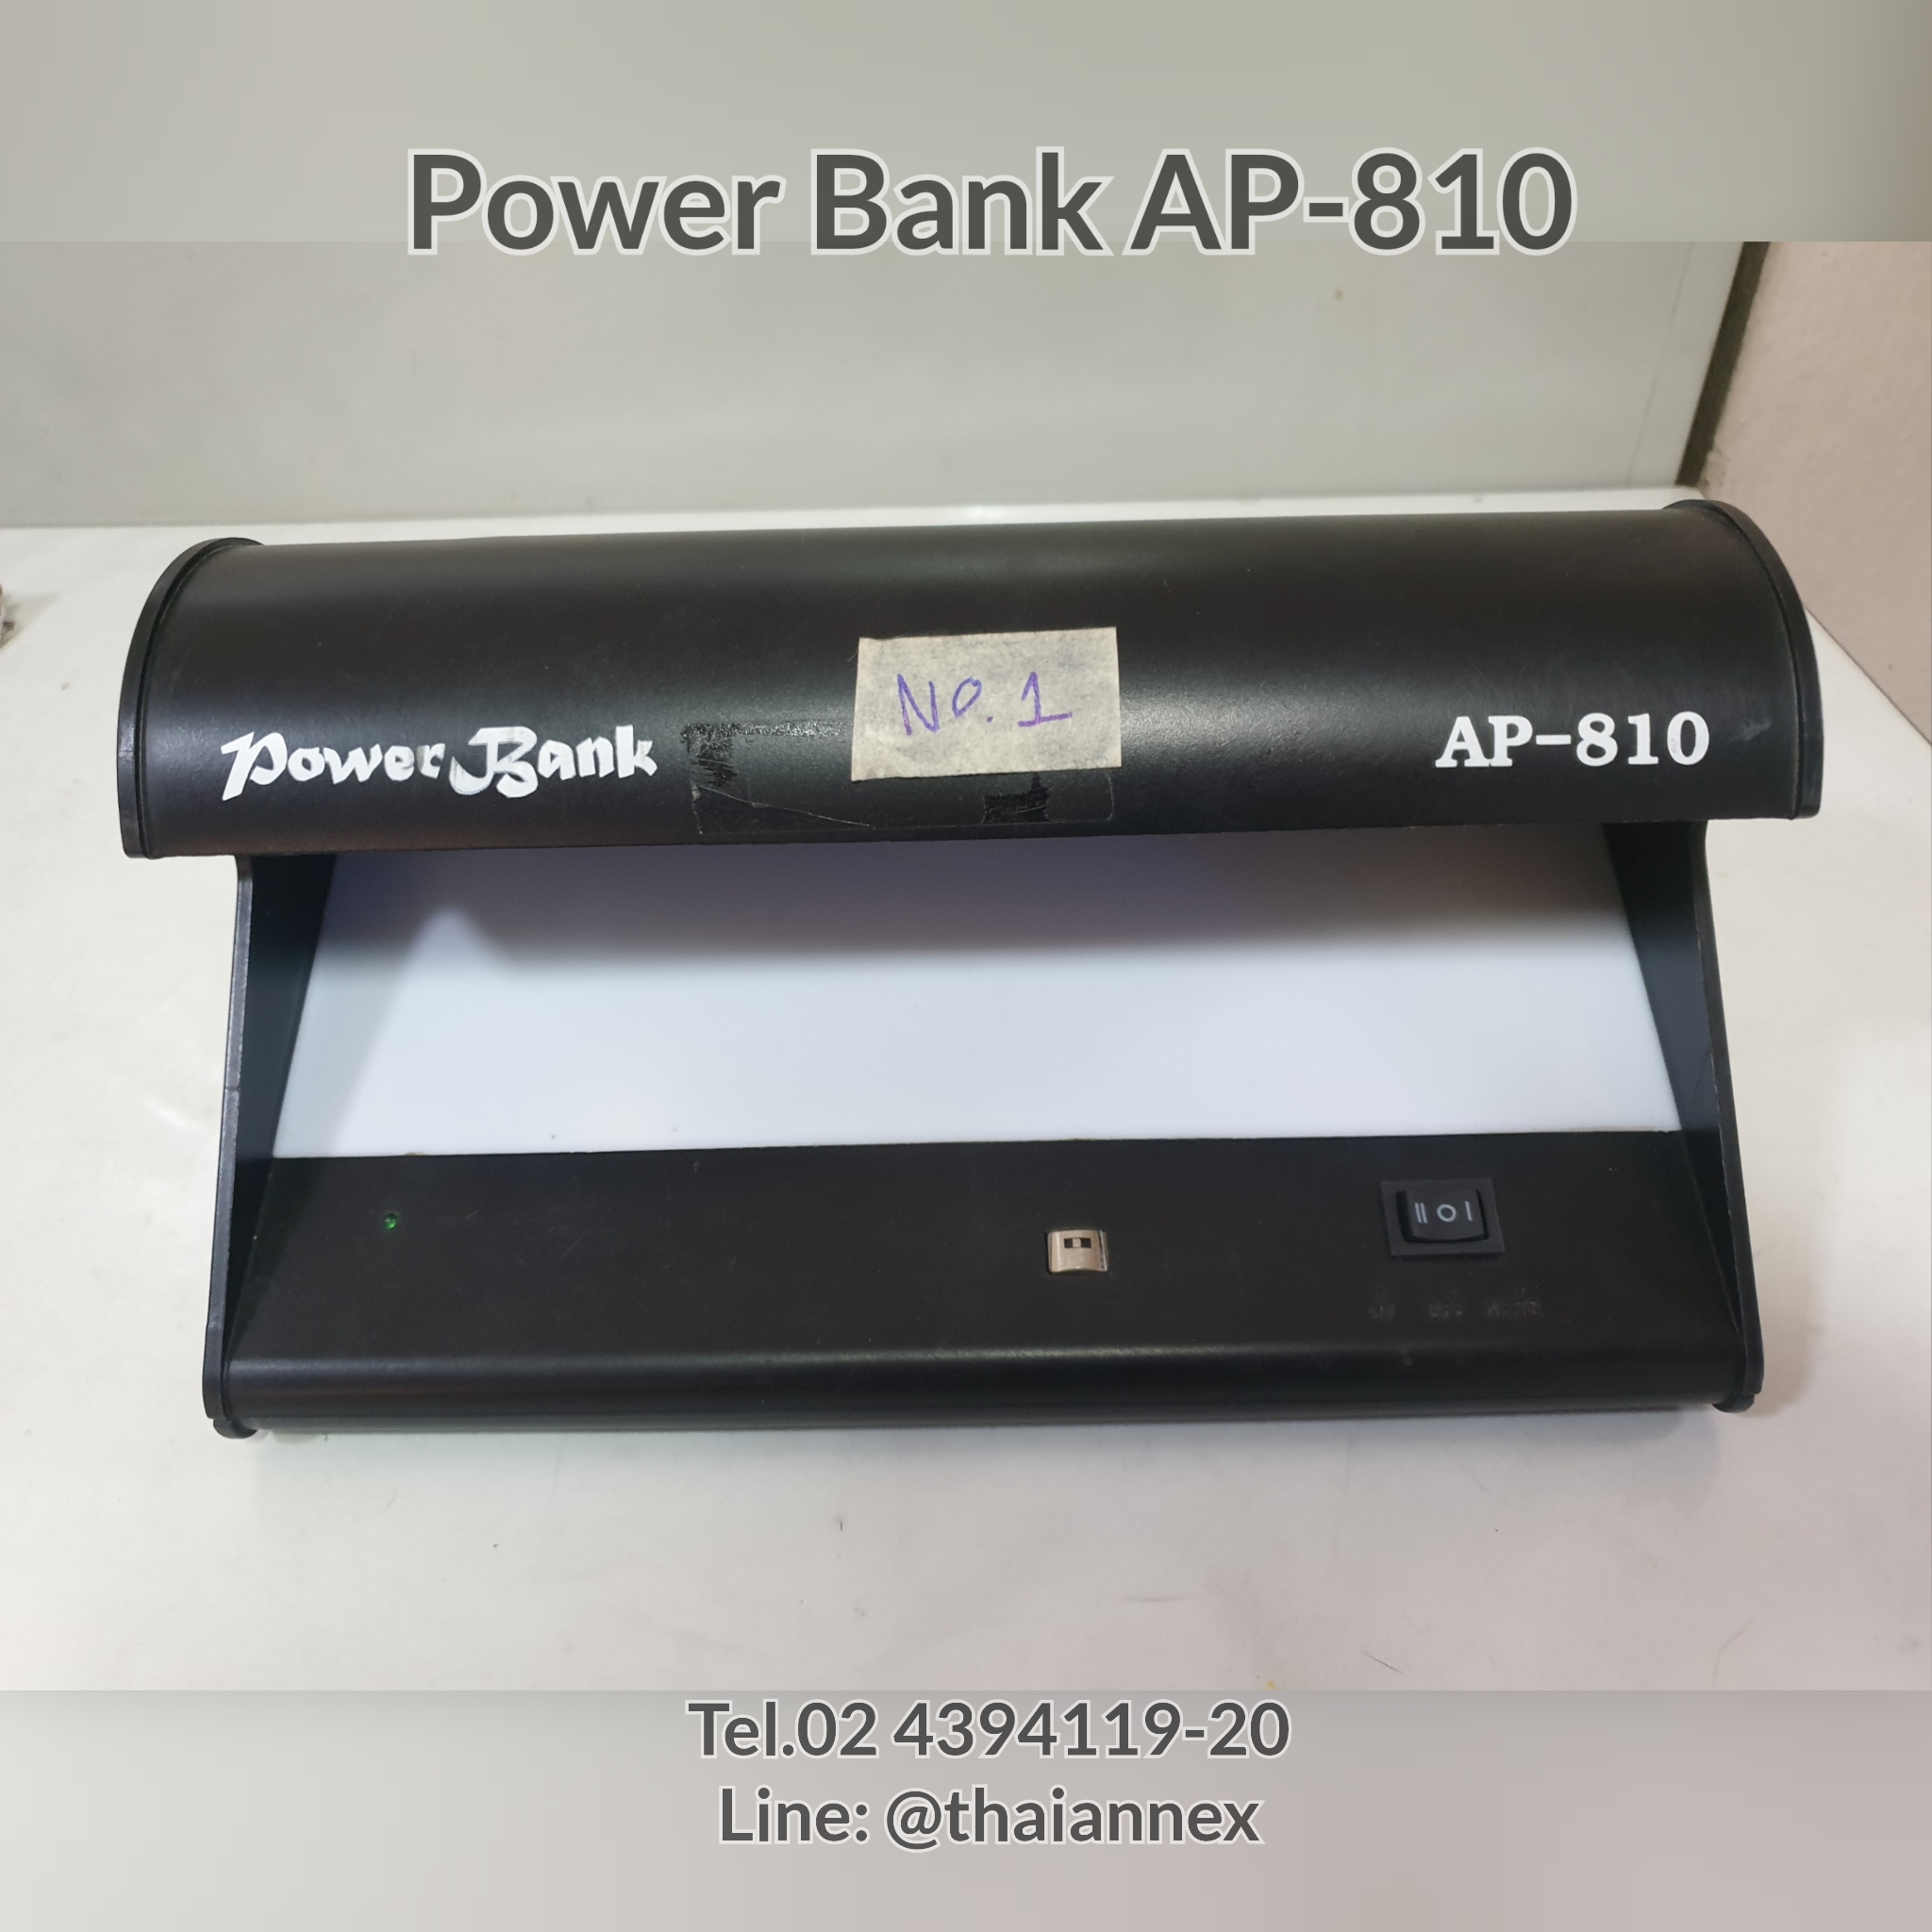 เครื่องตรวจธนบัตร Power Bank AP-810 (เครื่องที่ 1)